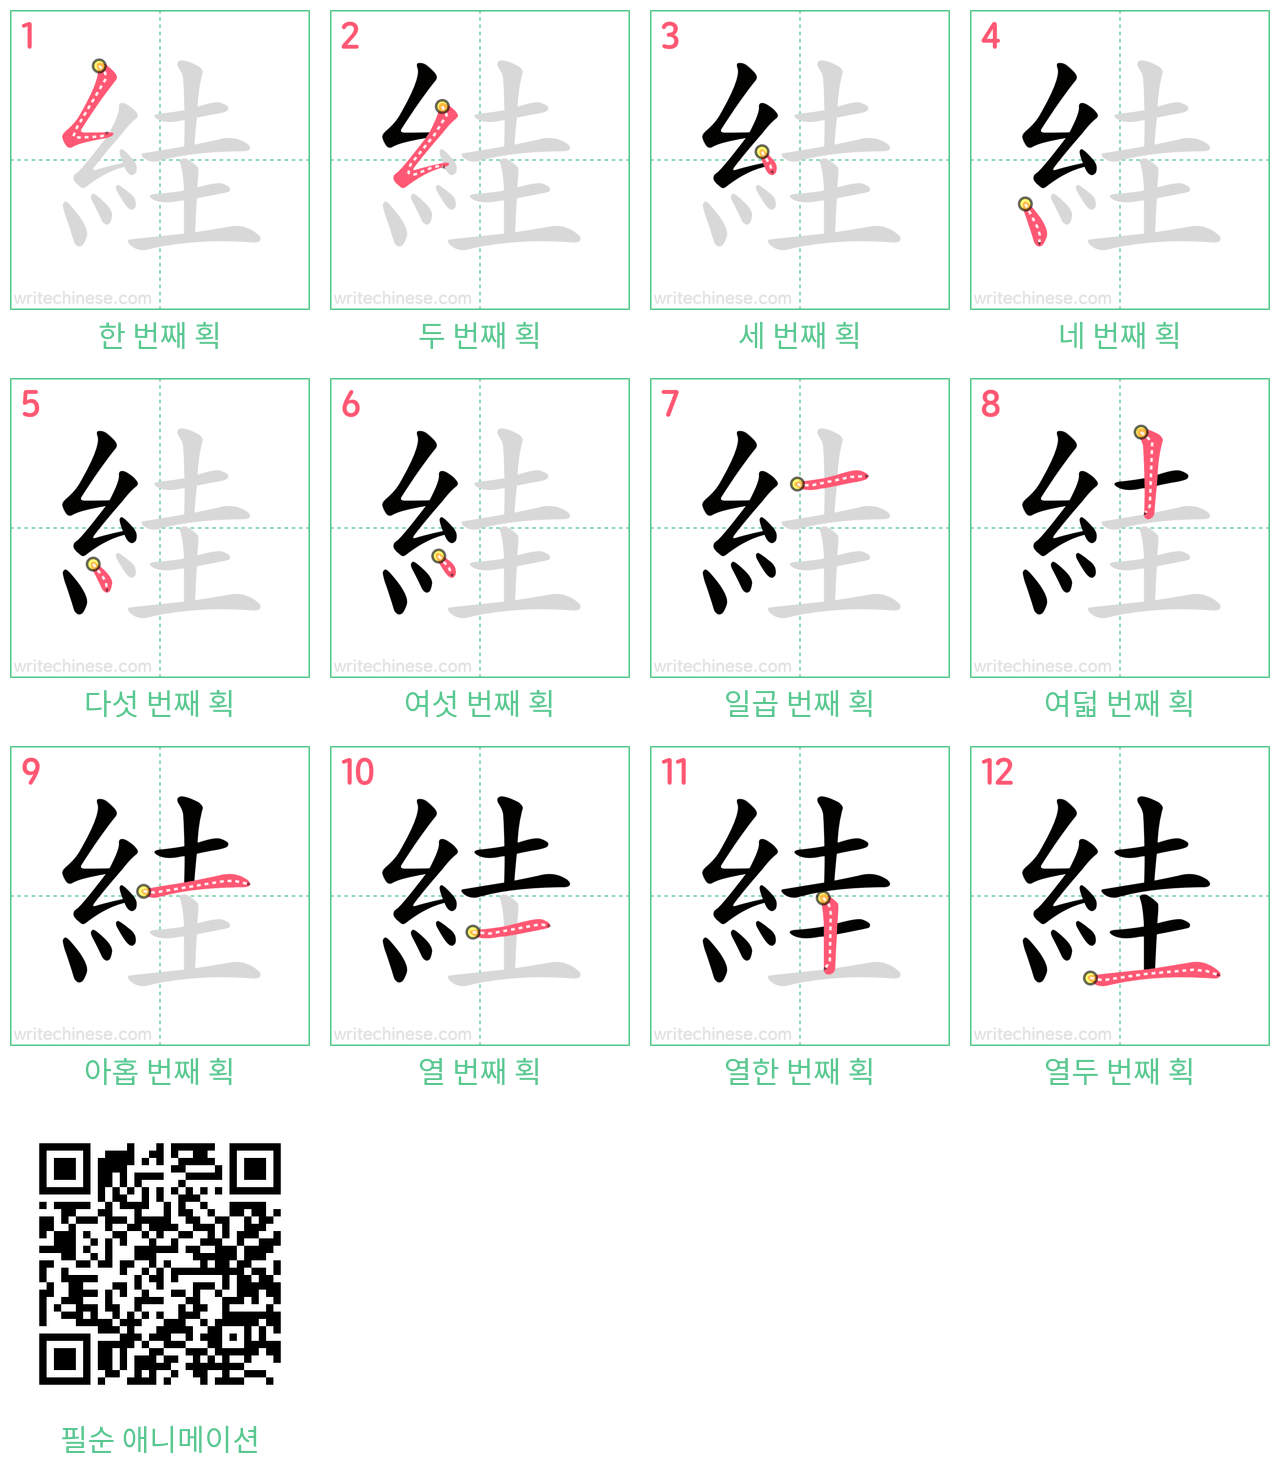 絓 step-by-step stroke order diagrams